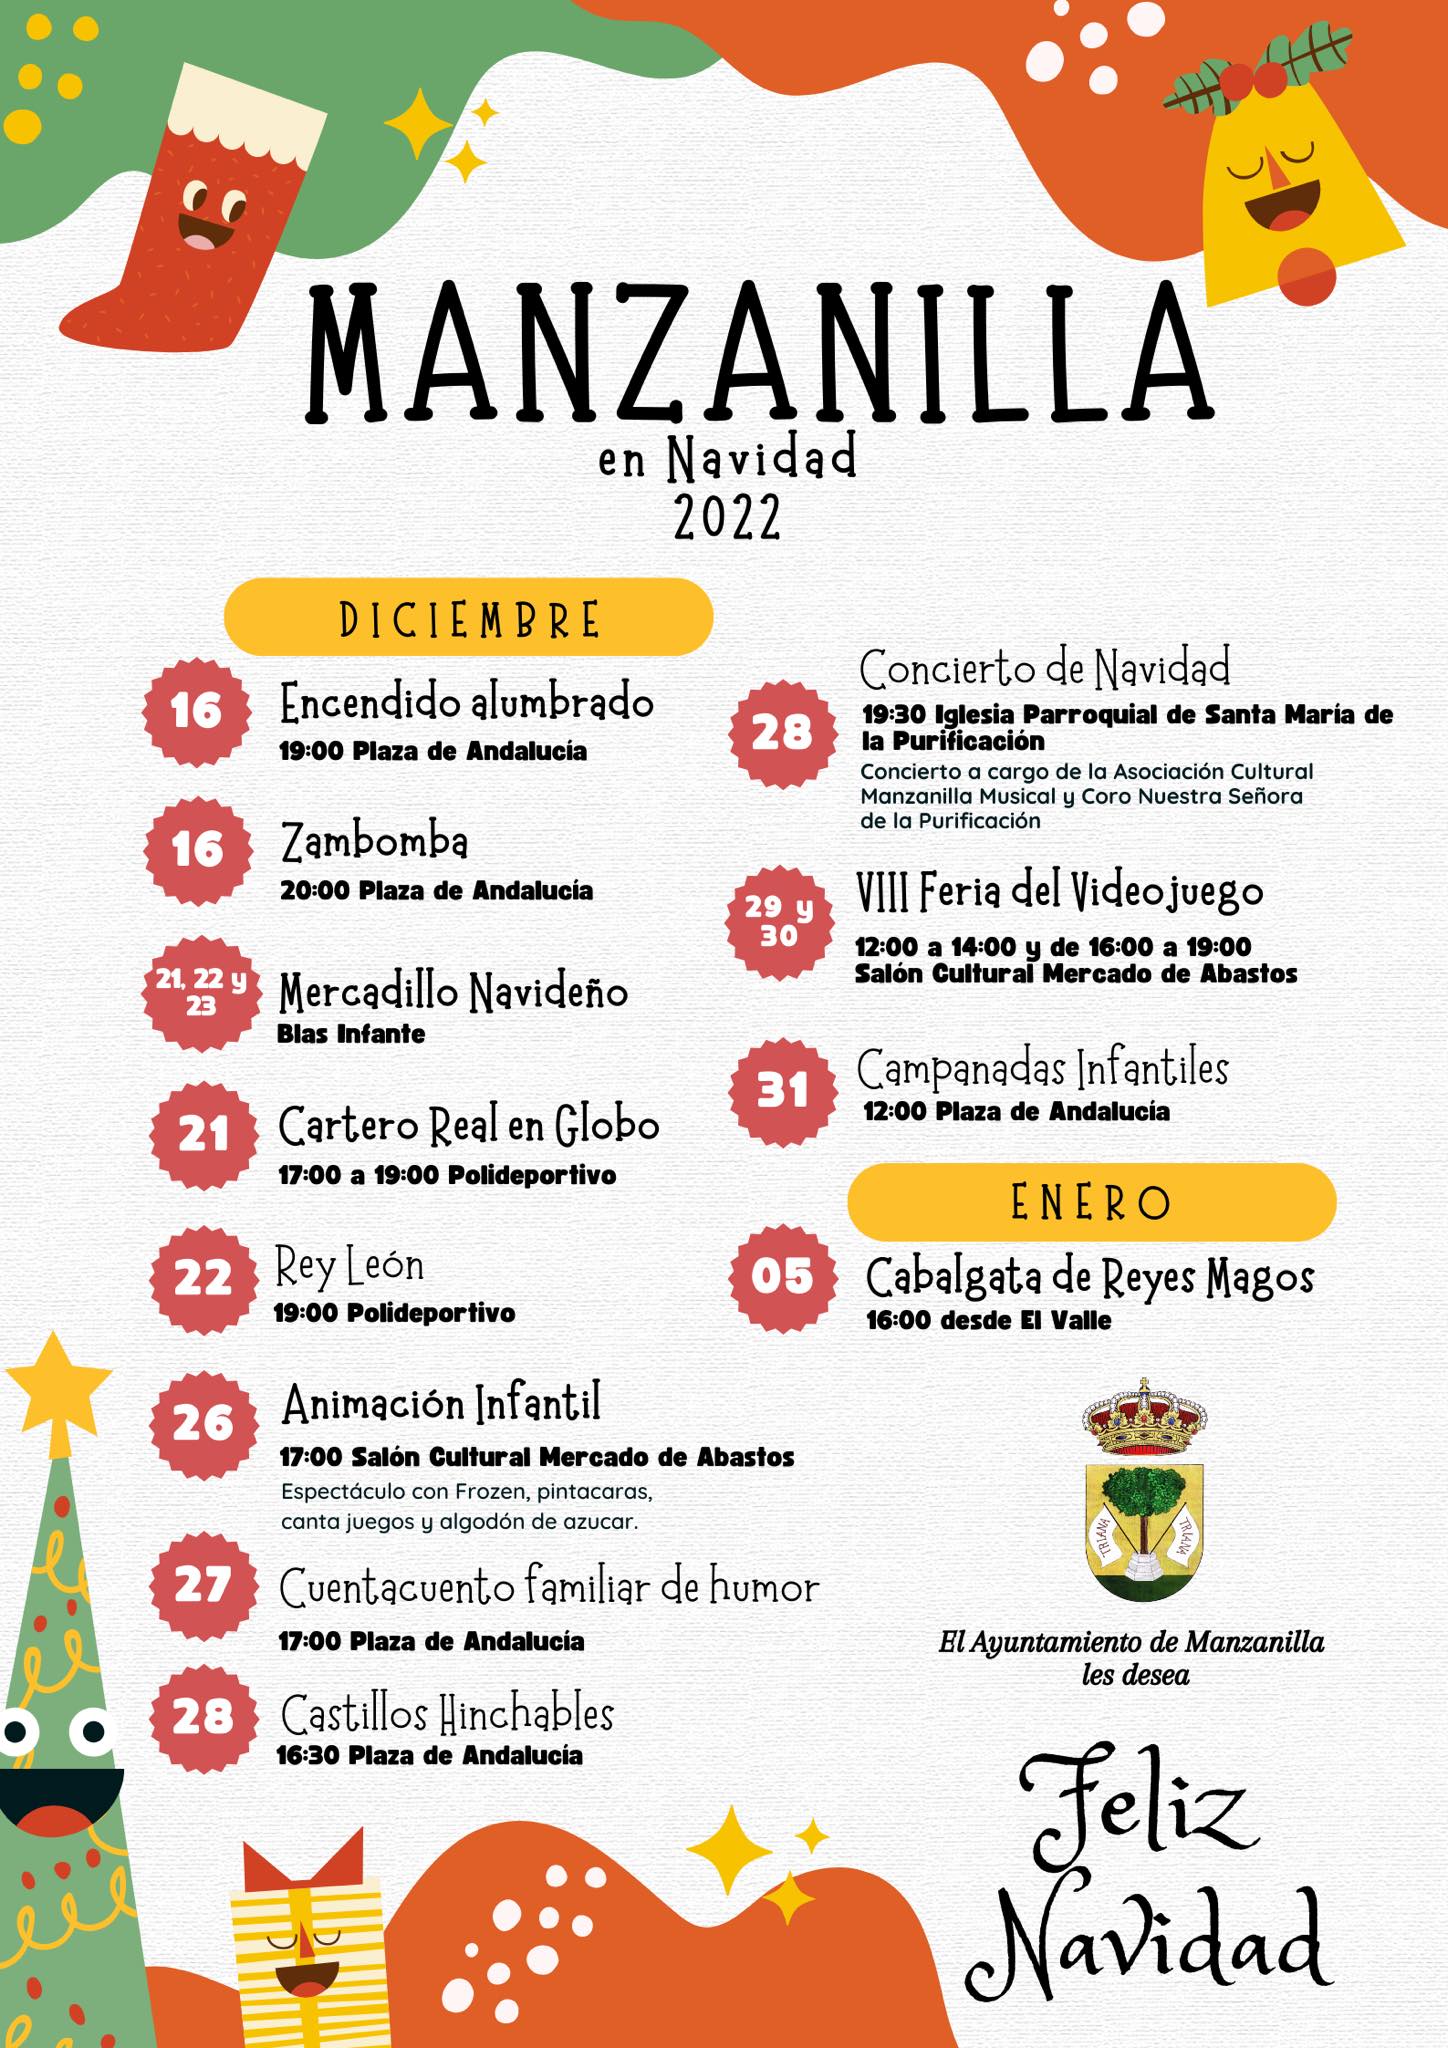 Manzanilla disfruta de una variada programación navideña